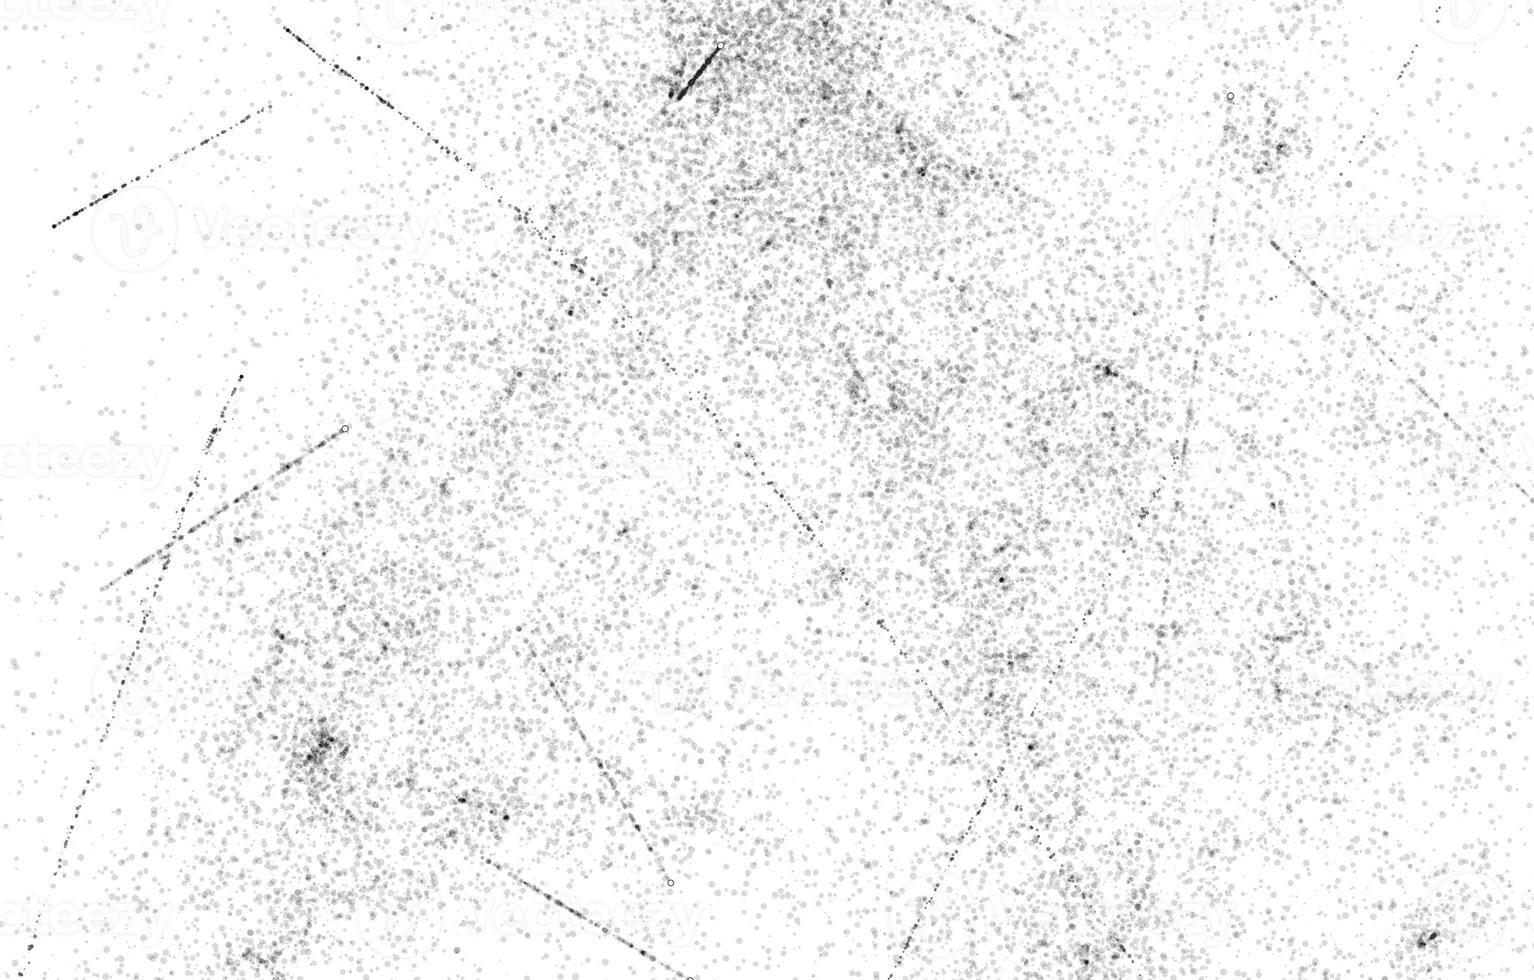 textura grunge para fondo.fondo blanco oscuro con textura única.fondo granulado abstracto, pared pintada antigua. foto